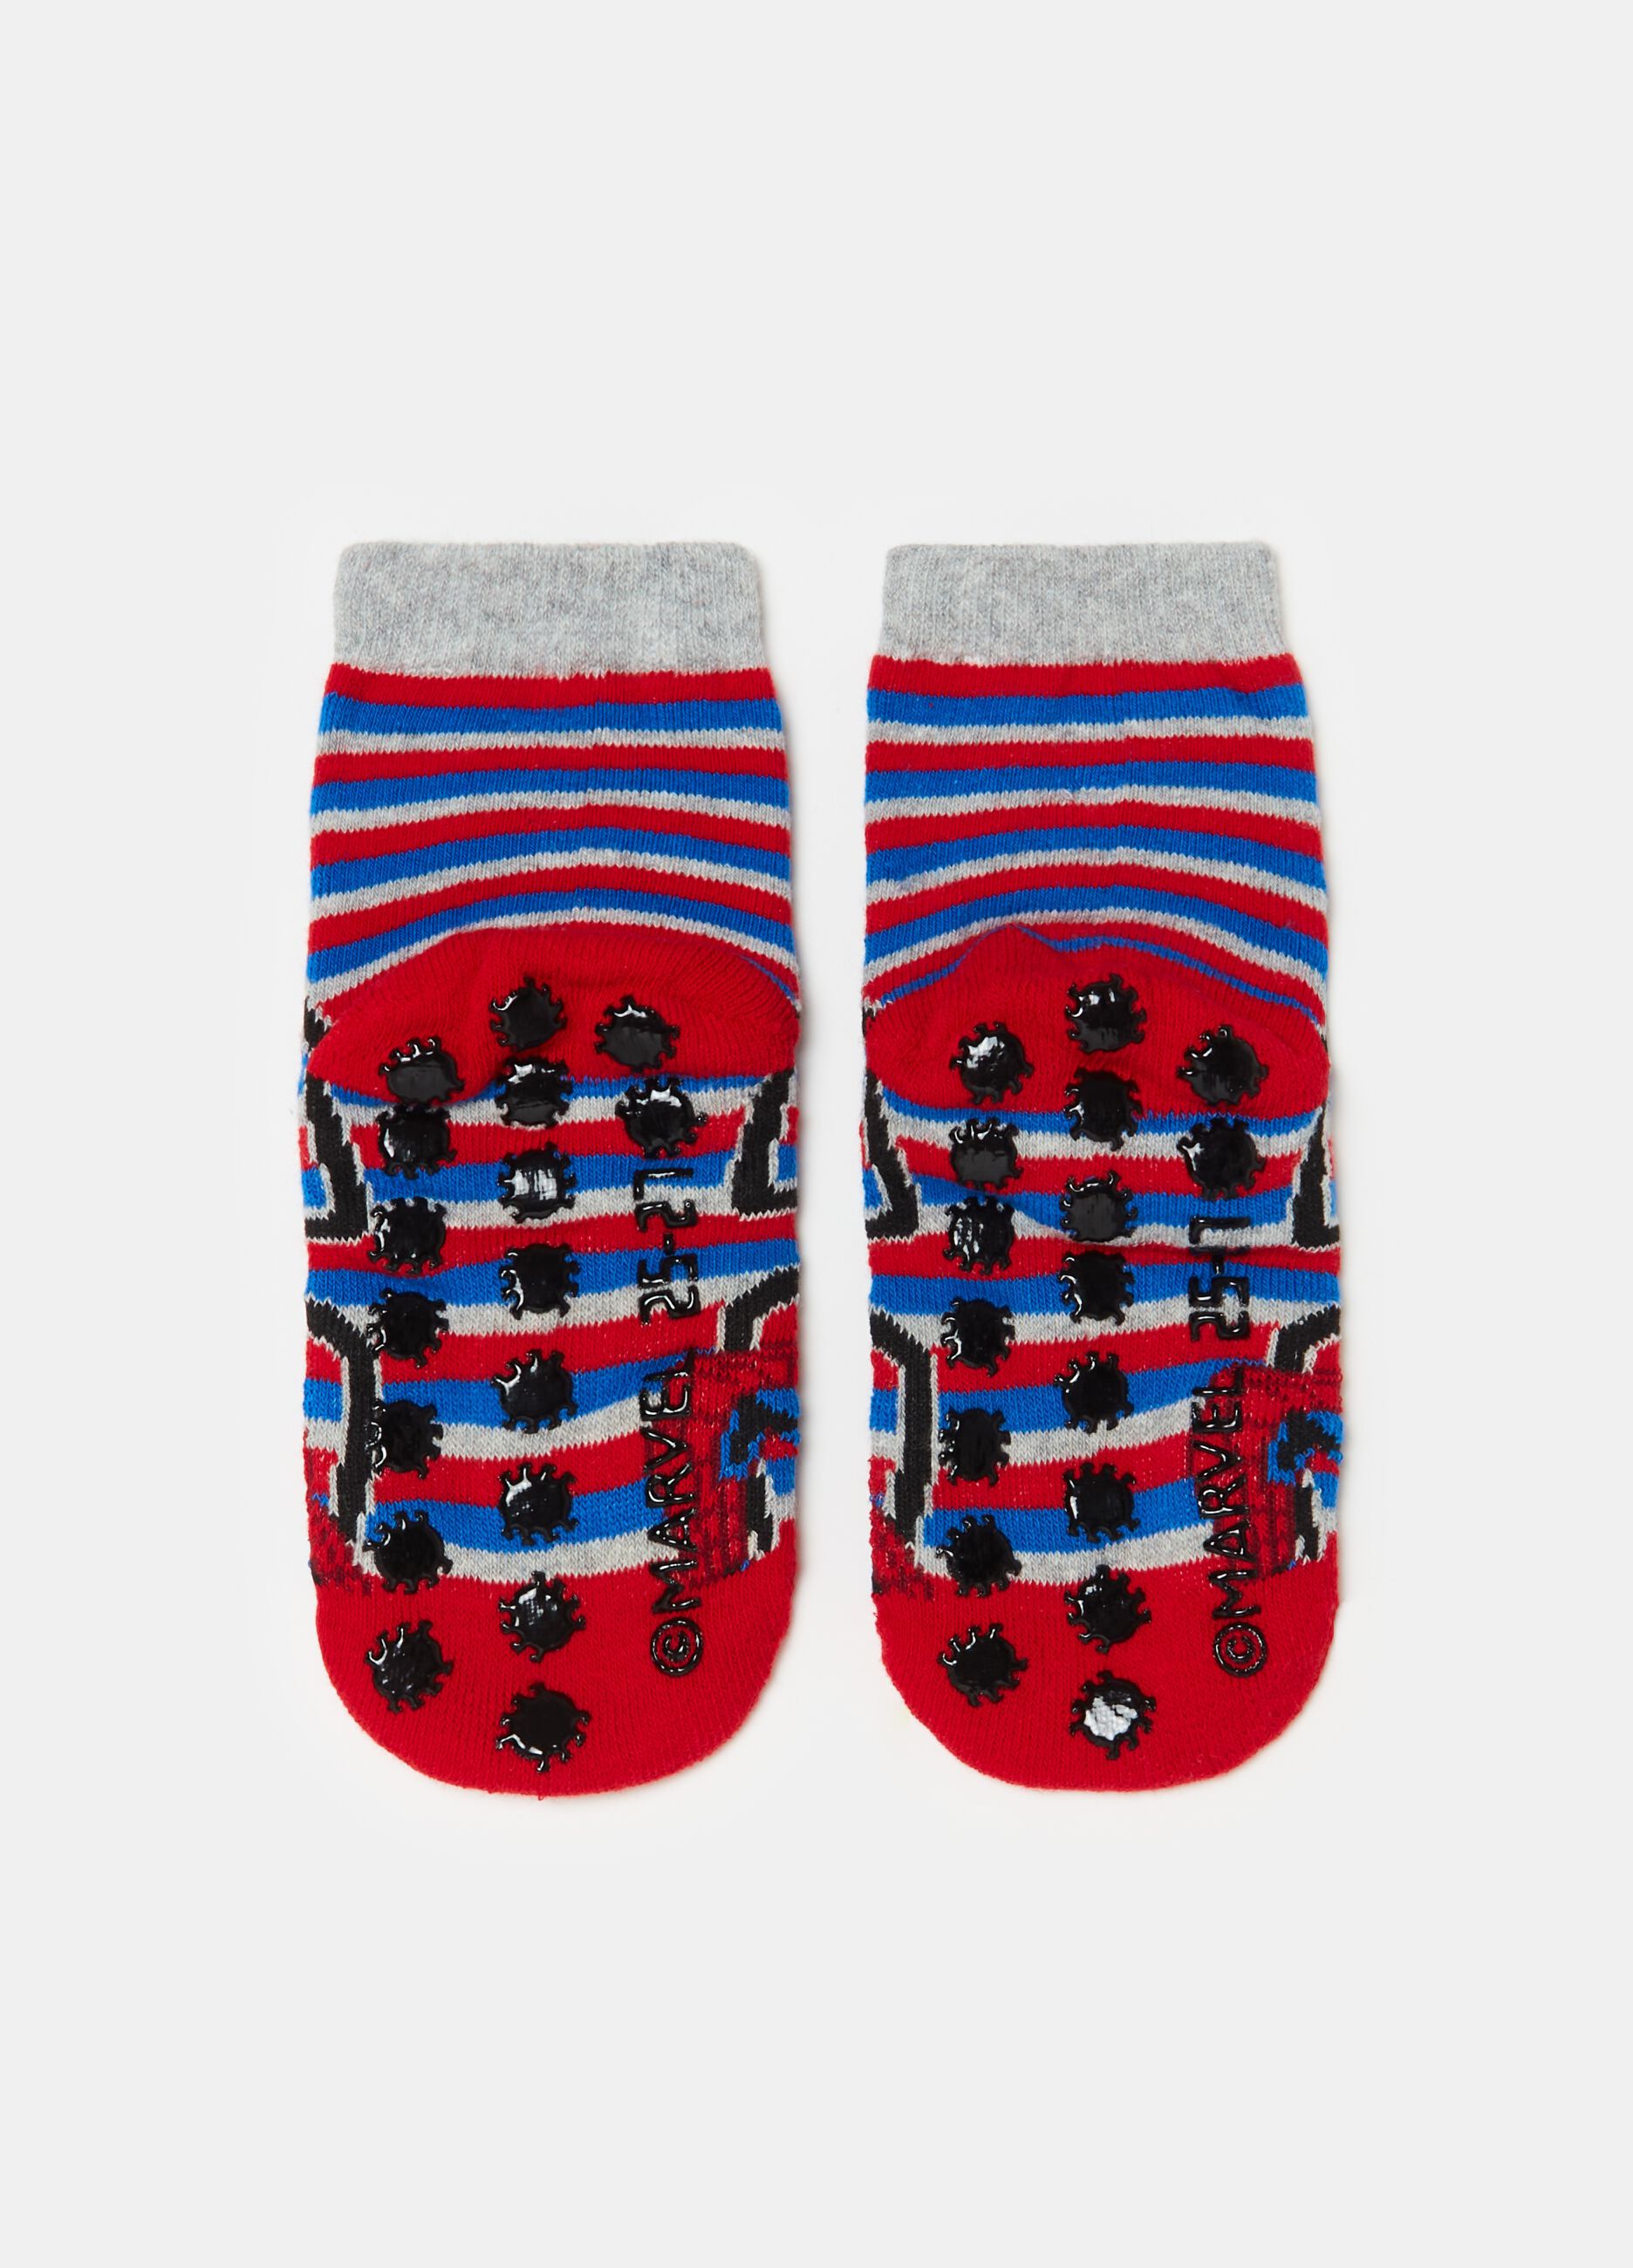 Slipper socks with Spider-Man design